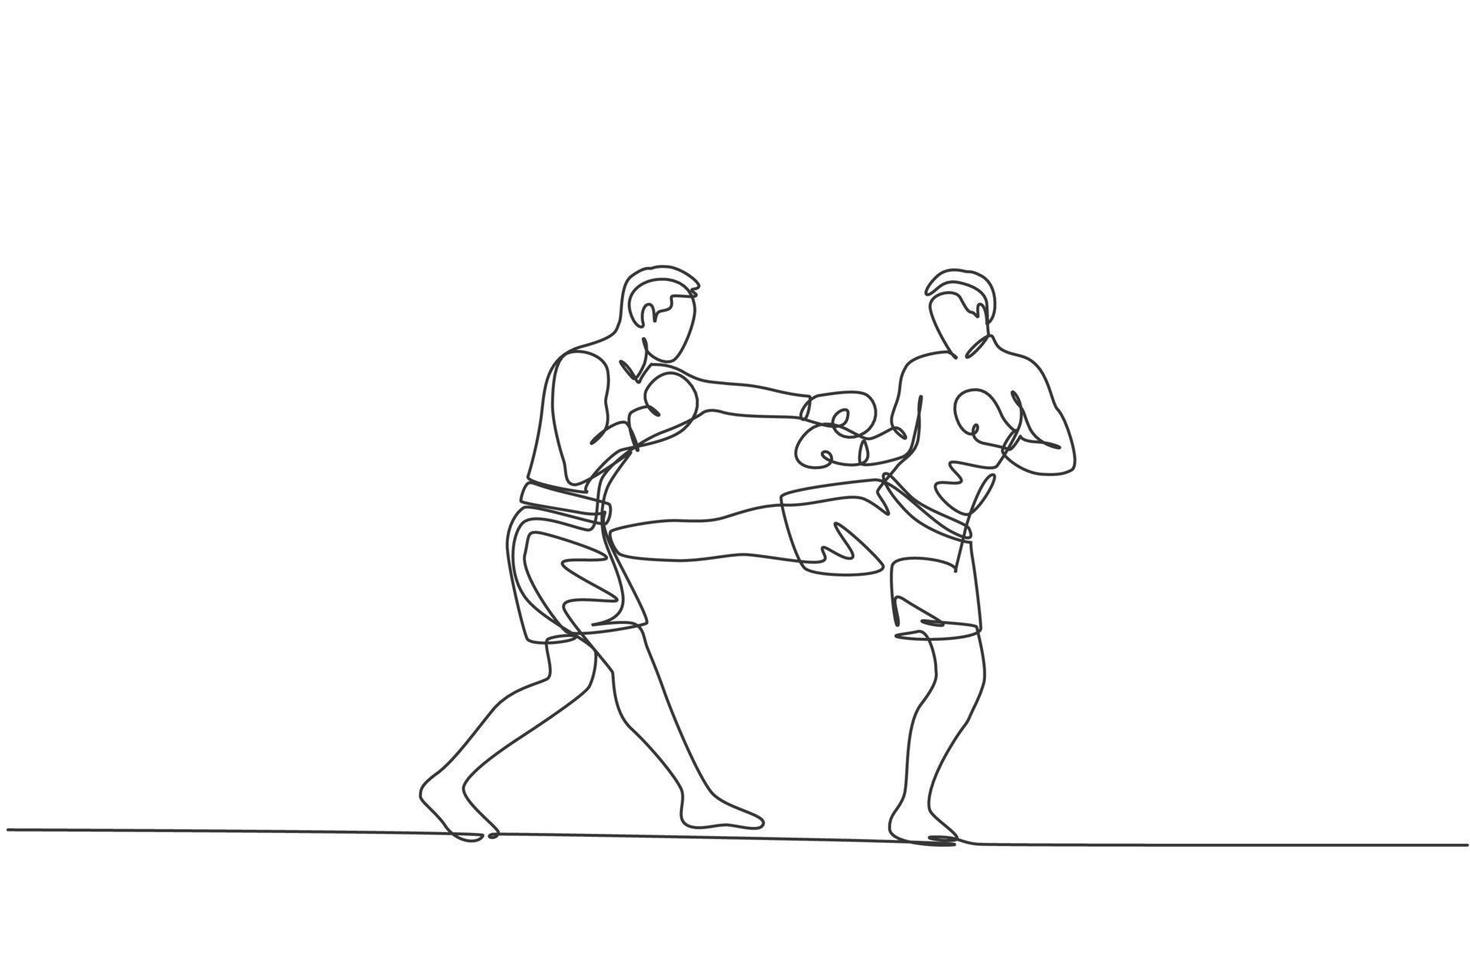 en enda linjeteckning av ung energisk man kickboxare som slåss i lokal turnering på boxningsarenan vektorillustrationgrafik. hälsosam livsstil sport koncept. modern kontinuerlig linjeritningsdesign vektor